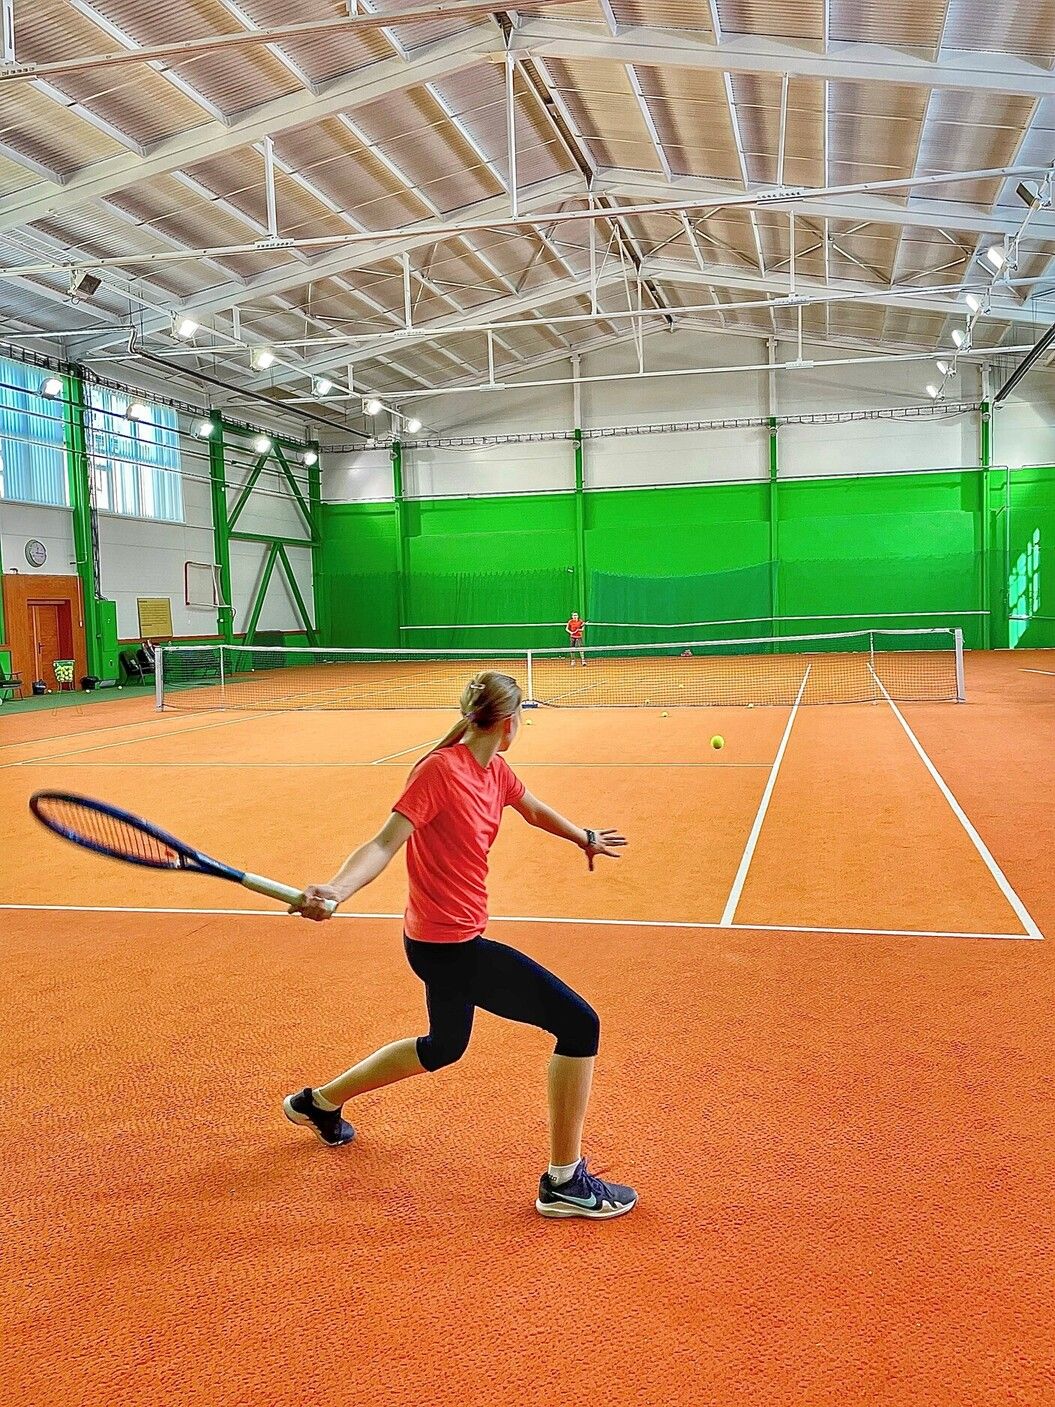 Súkromný archív Sofie Paukovej - Tréning v MatchPoint Tennis Academy (Považská Bystrica).jpg